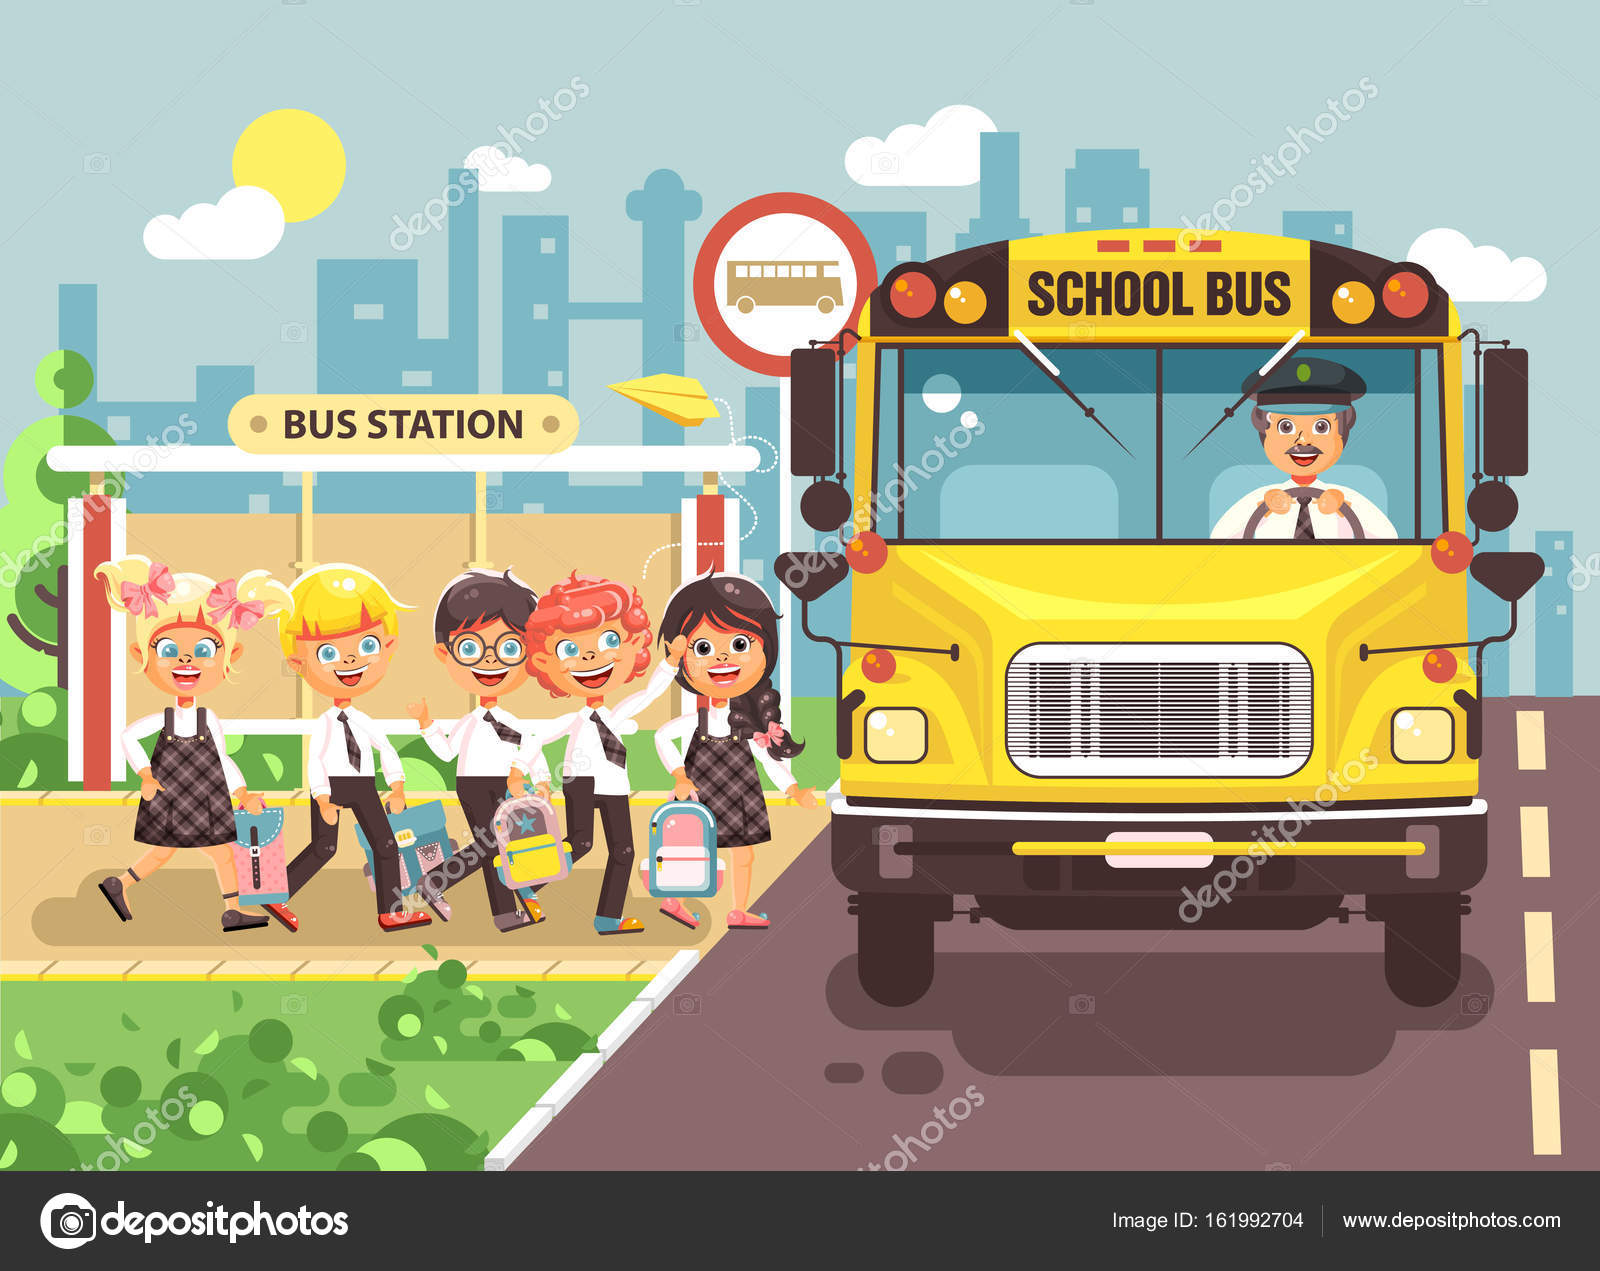 Desenho de ônibus escolar amarelo com placa de parada de ônibus